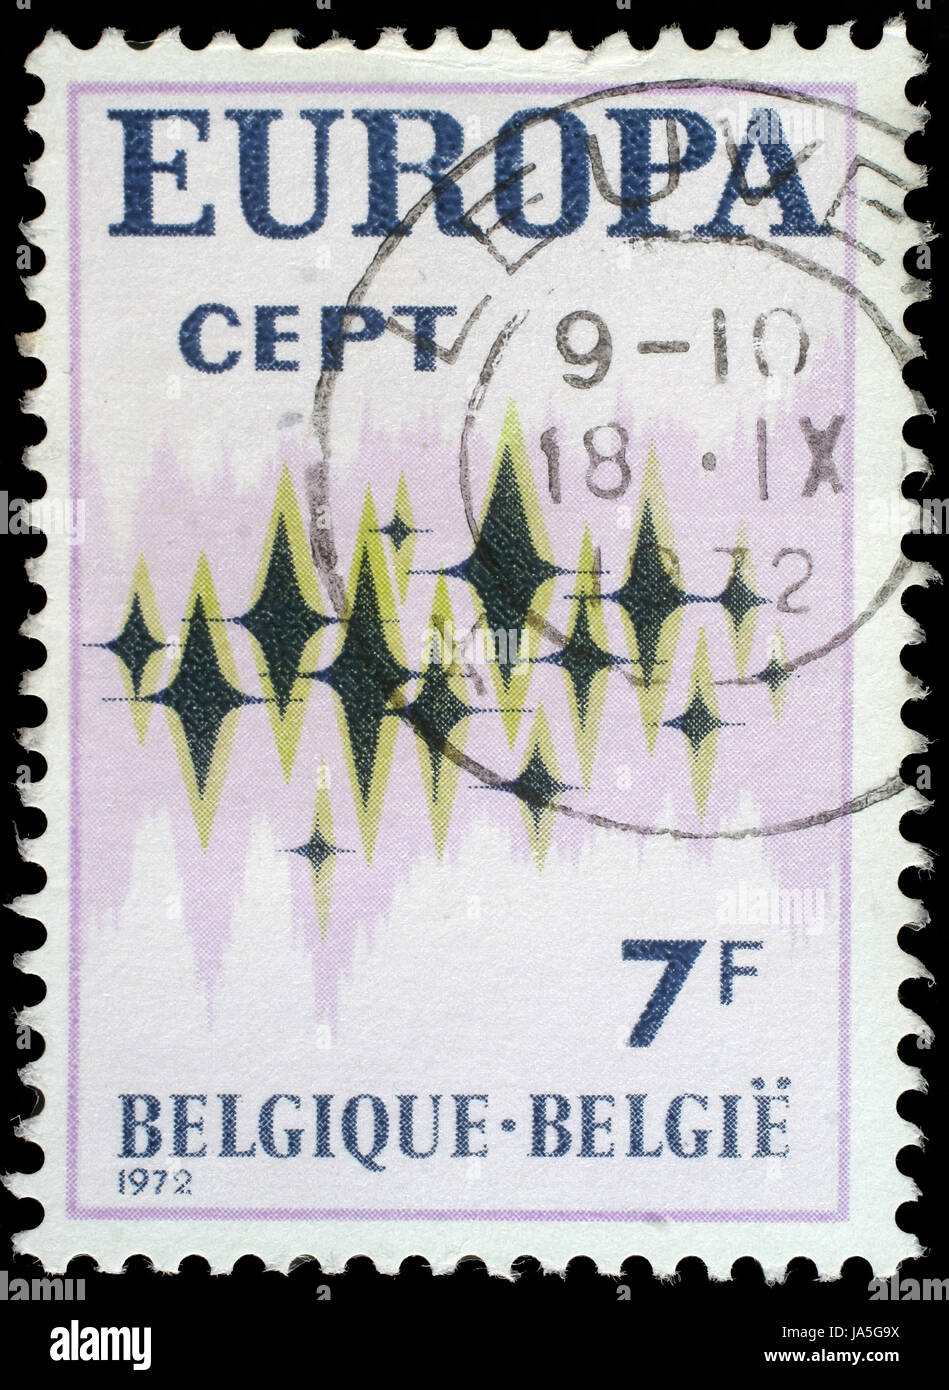 Belgique - VERS 1972 : timbres en Belgique montrant des étoiles scintillantes sur un fond blanc, vers 1972. Banque D'Images